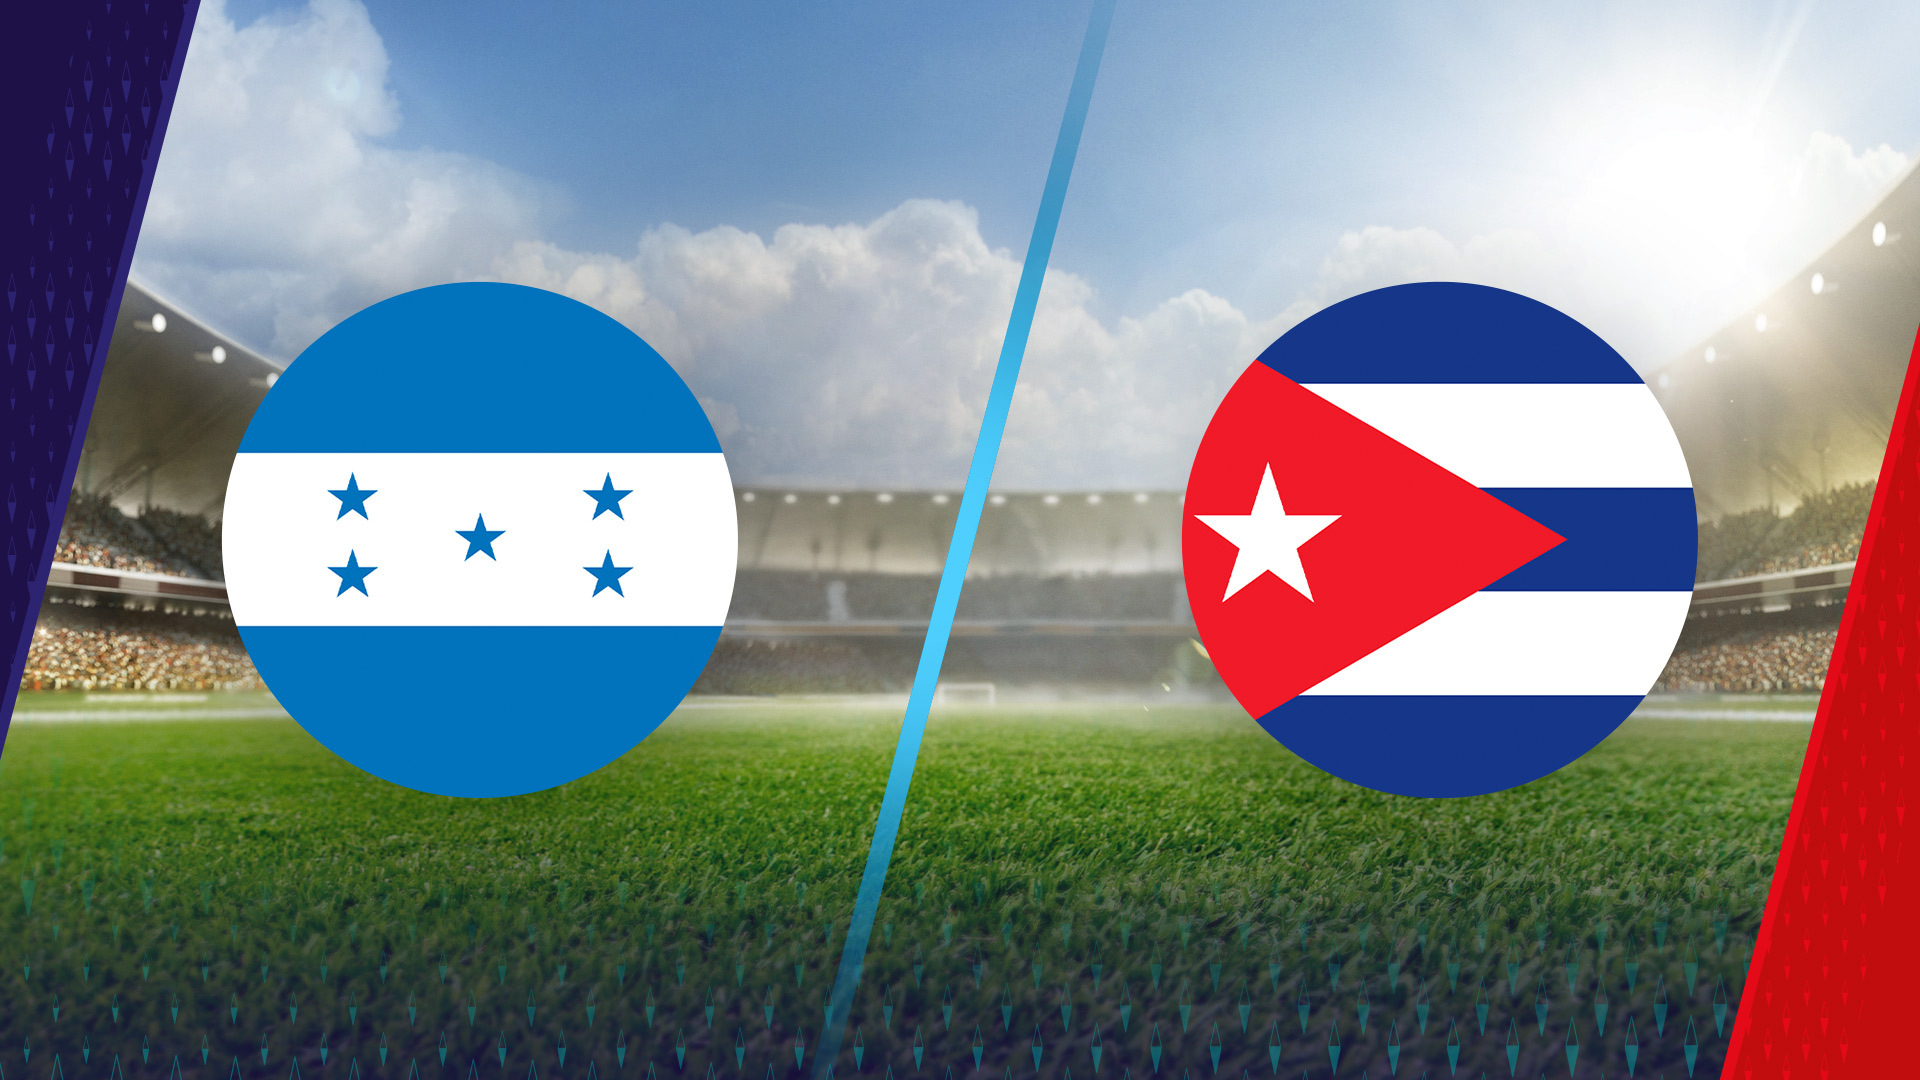 Raio-X - Honduras vs Cuba - Confrontos 